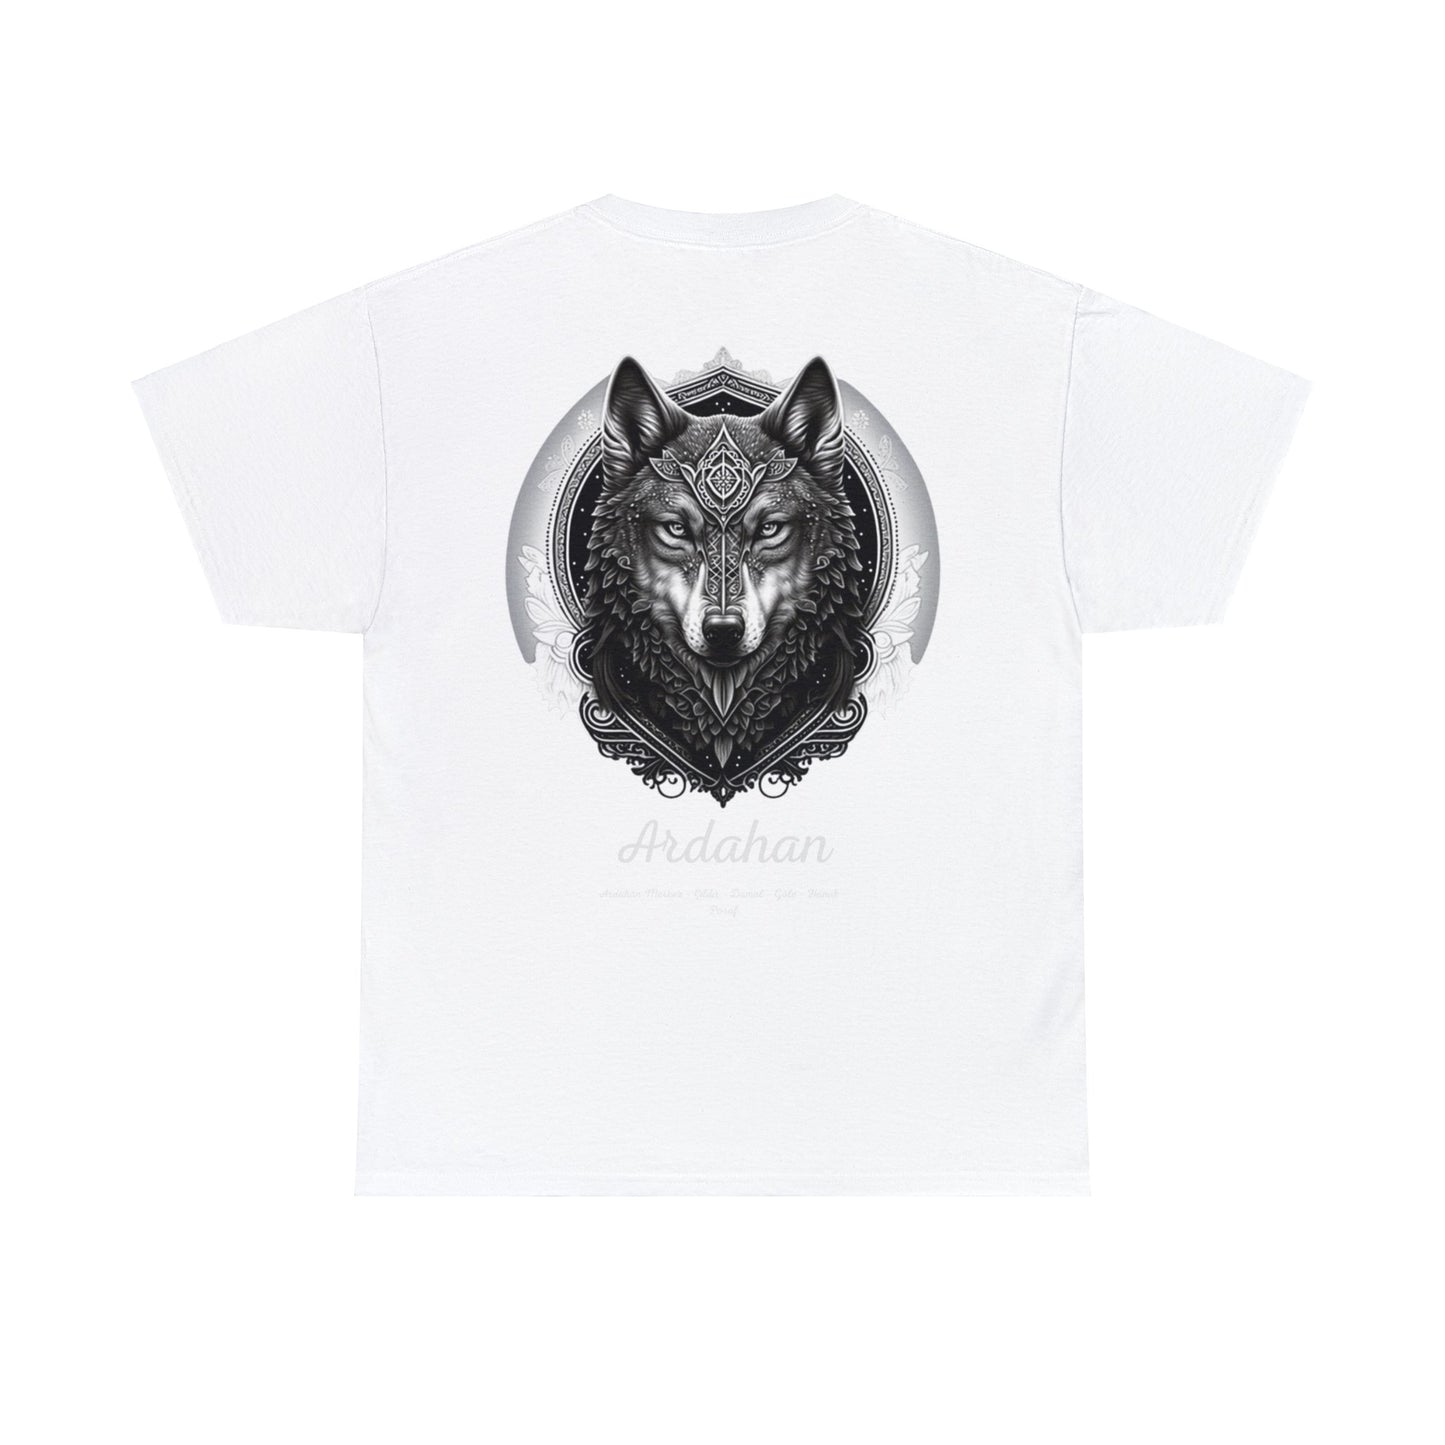 Kurt - 75 Ardahan - T-Shirt - Back Print - Black/White